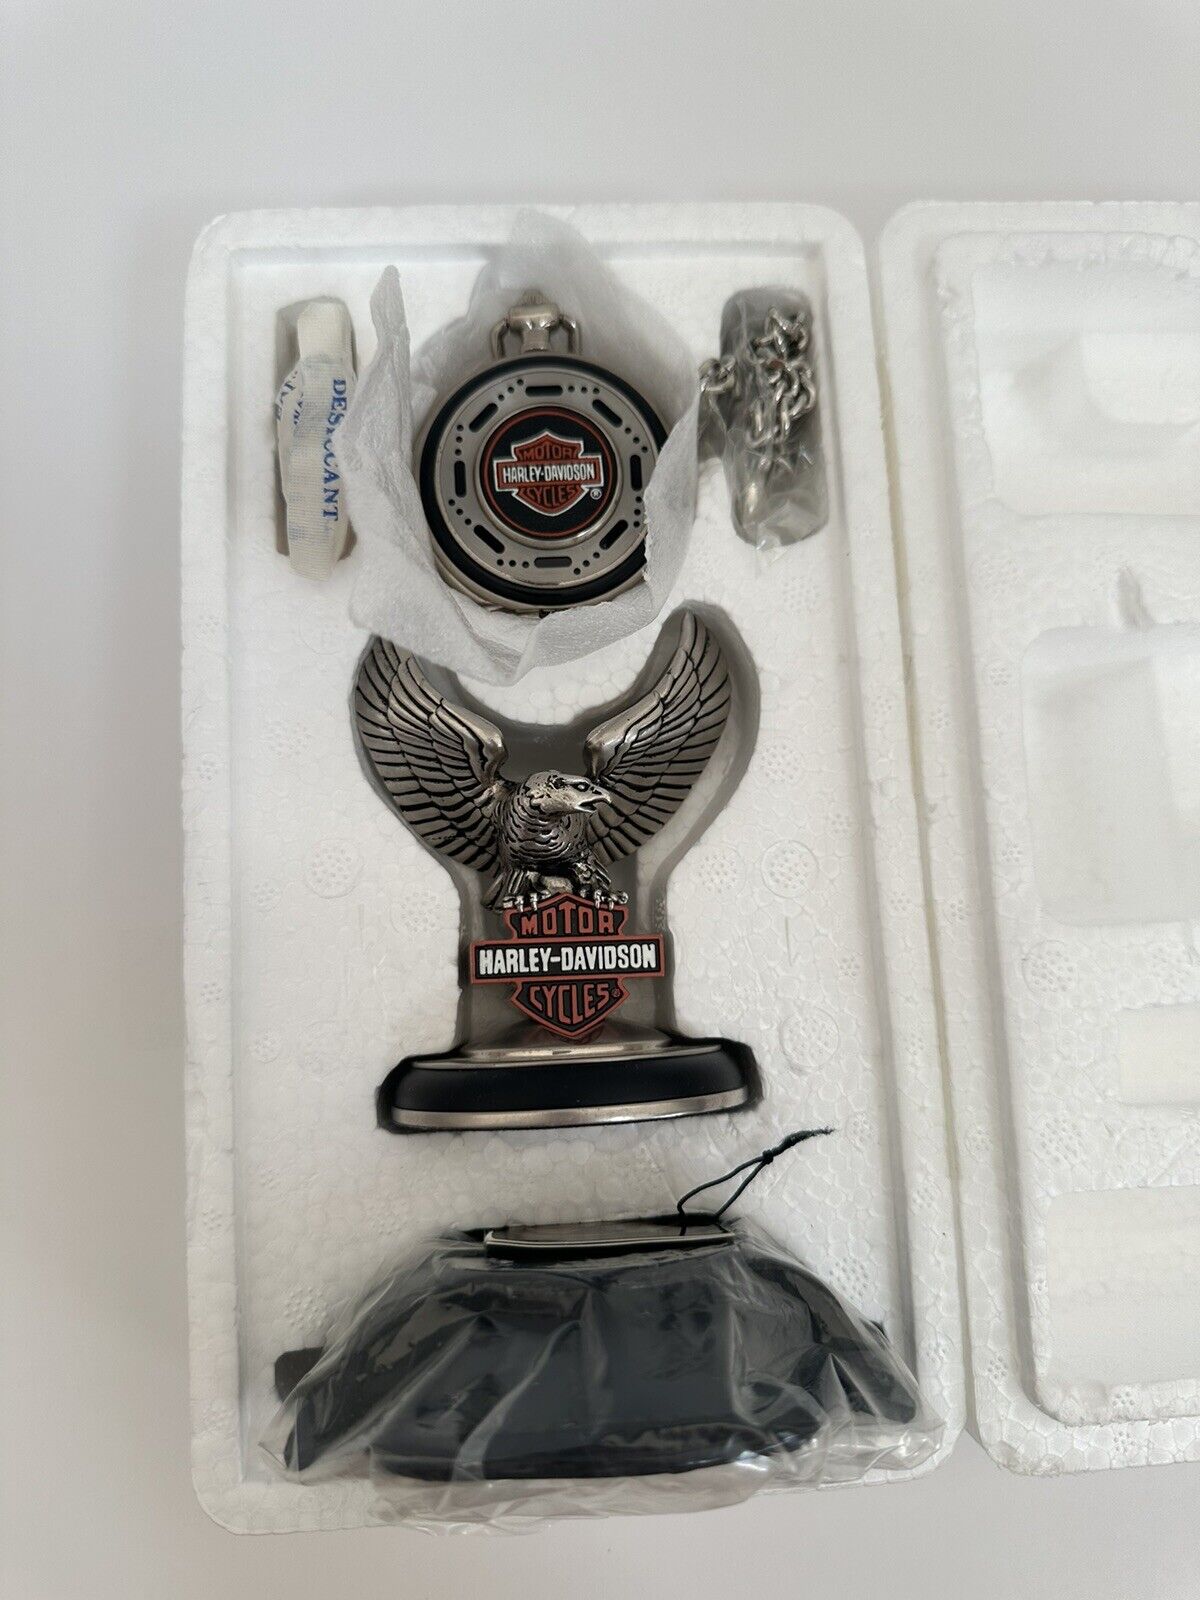 Vintage Franklin Mint Harley Davidson Heritage Softail Pocket Watch Set